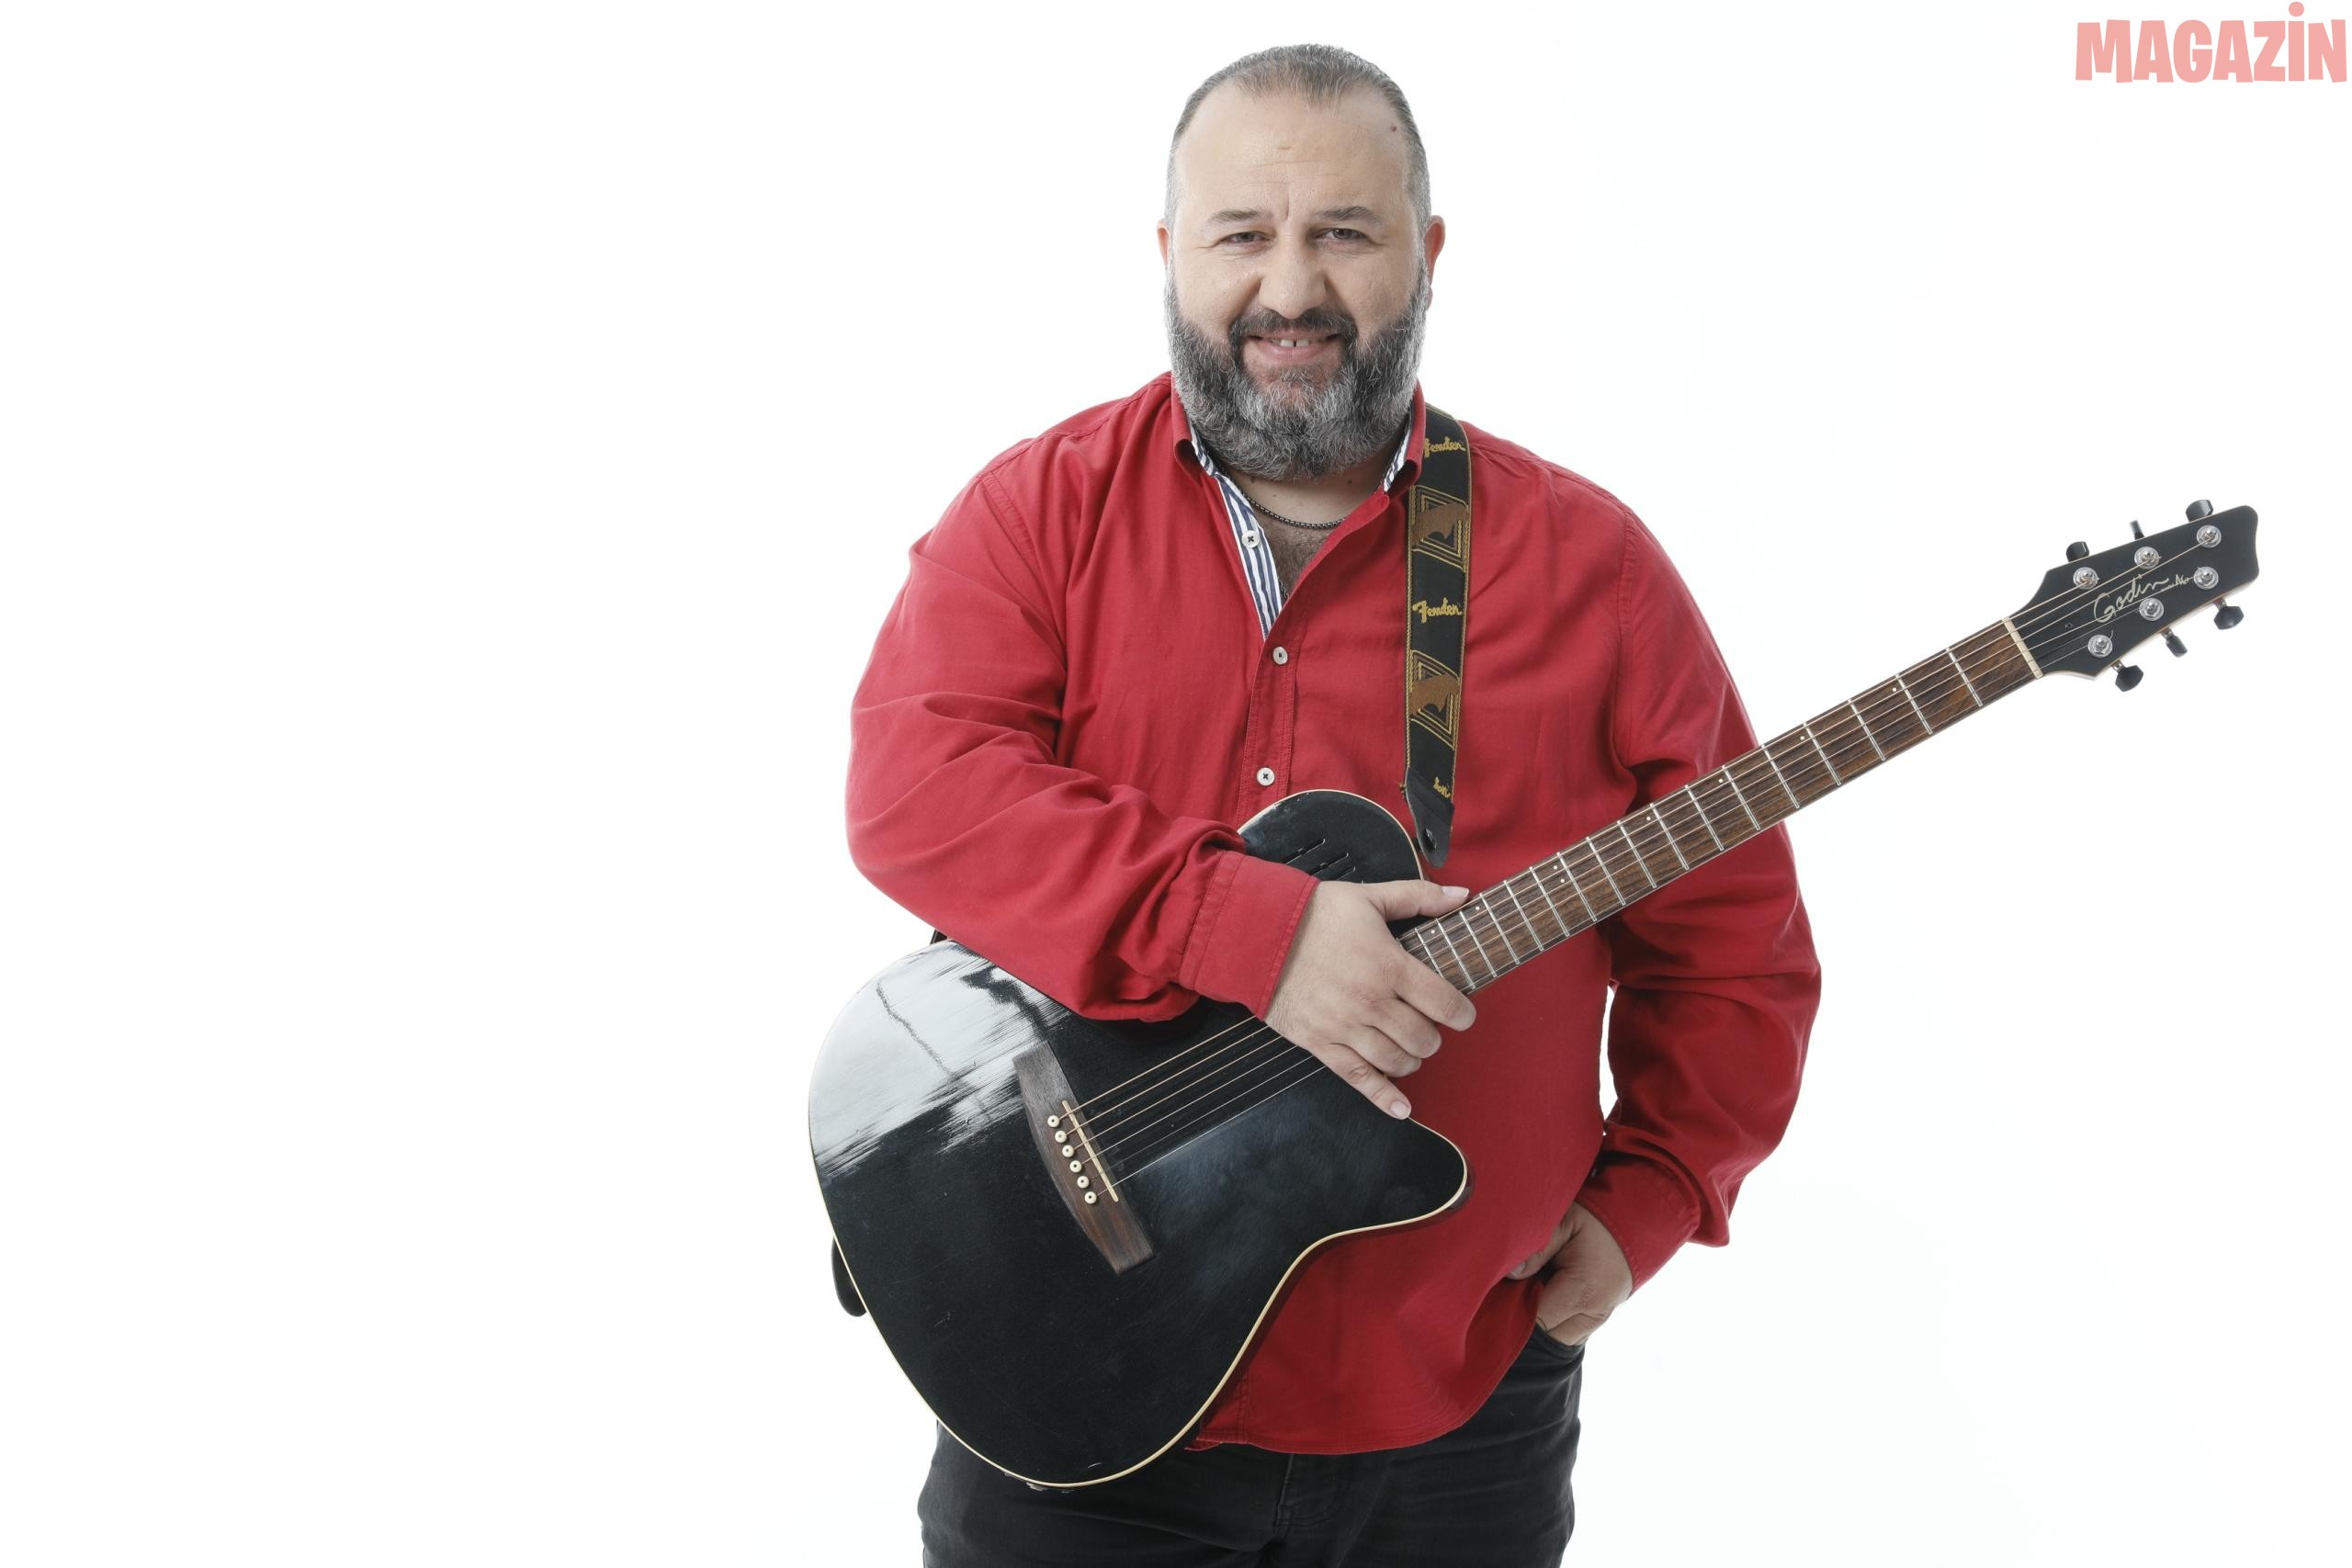 Yanis Kordomenidis ilk single çalışması “Mi Me Rotas” ve “Diğer Yarım” ile tüm dijital platformlarda